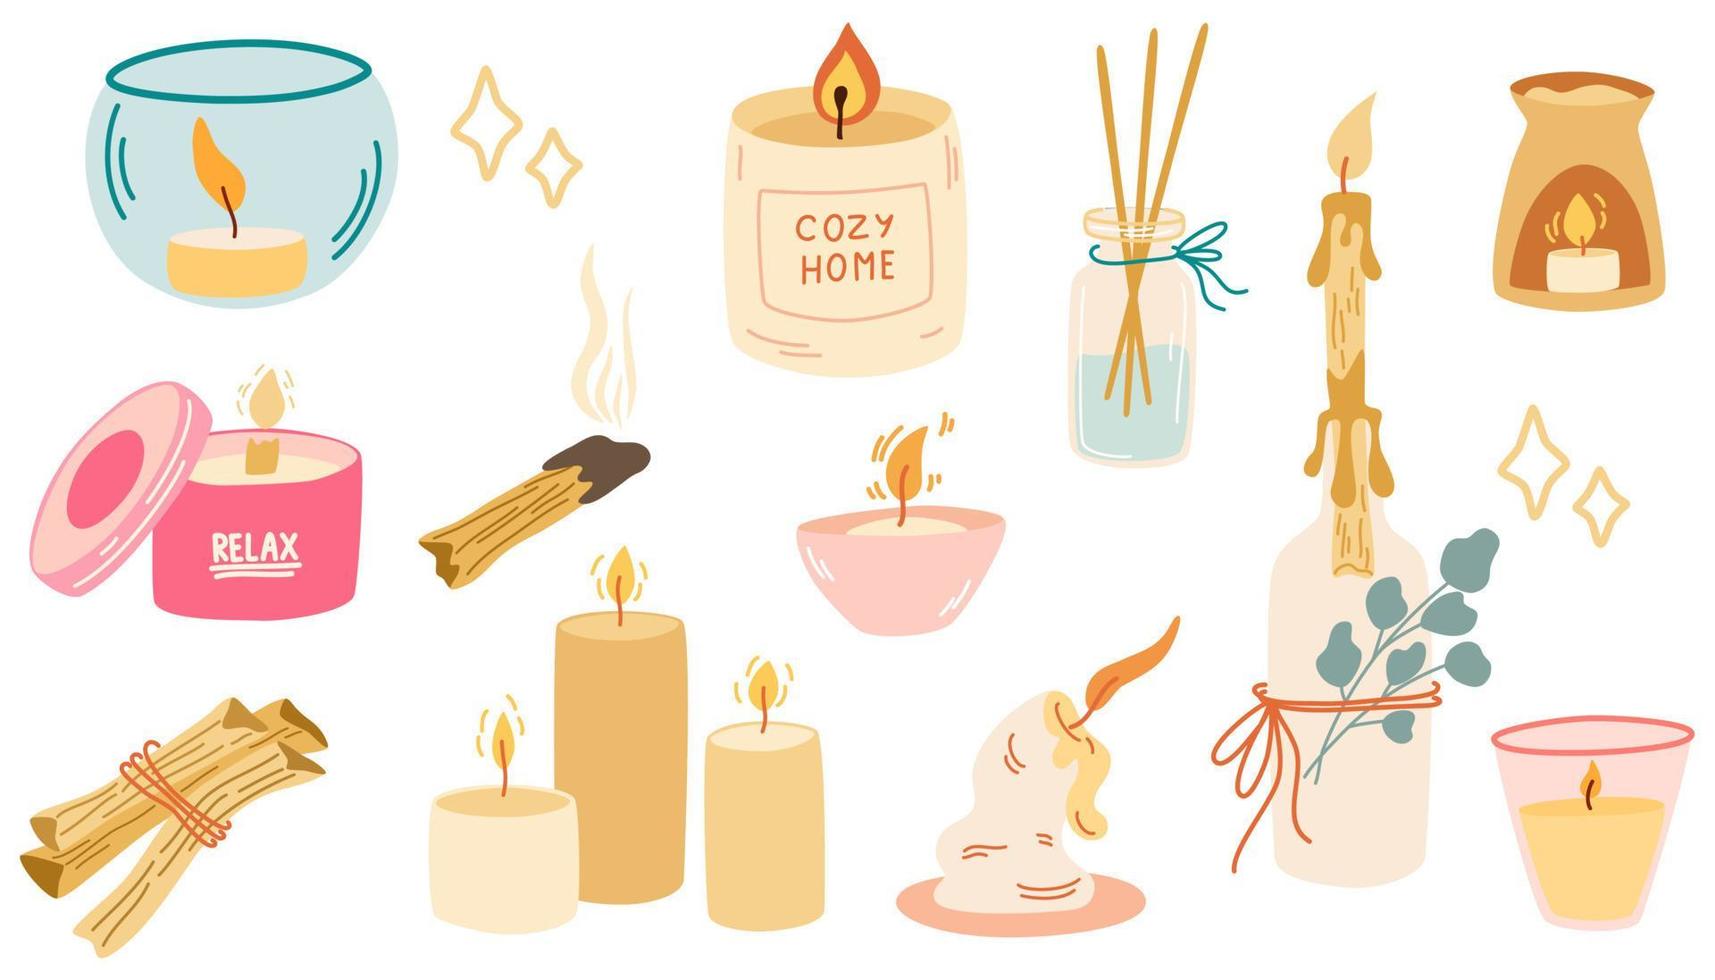 candele e incenso. impostato per il relax dell'aromaterapia e il comfort domestico. candele, palo santo, candelieri e candelieri profumati. illustrazioni di cartoni animati vettoriali isolate su uno sfondo bianco.